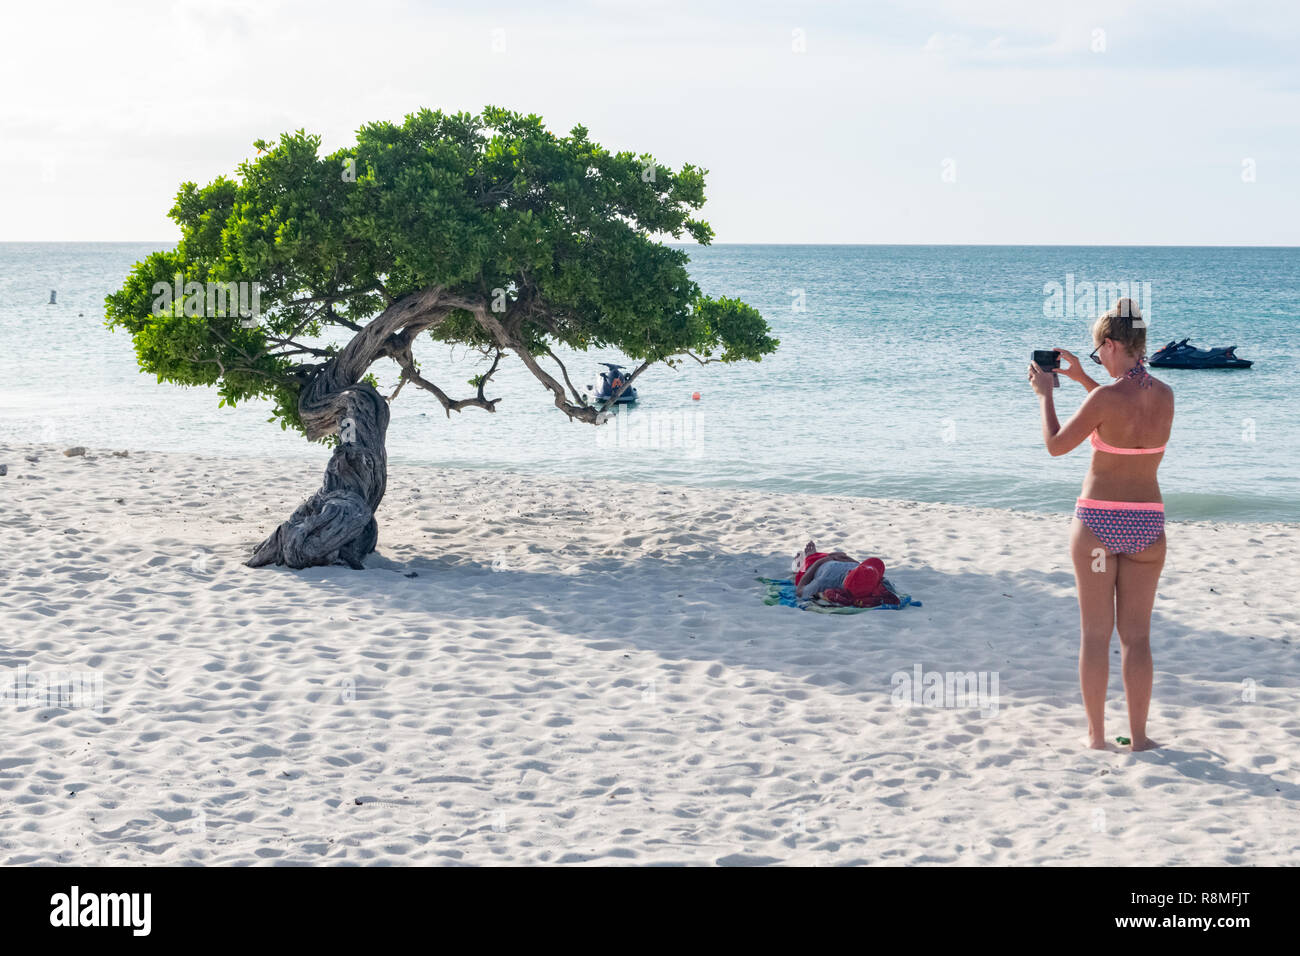 Aruba Beach - Turismo in Aruba - albero Divi-Divi Eagle Beach - un turista prende una foto del famoso Divi Divi alberi Foto Stock